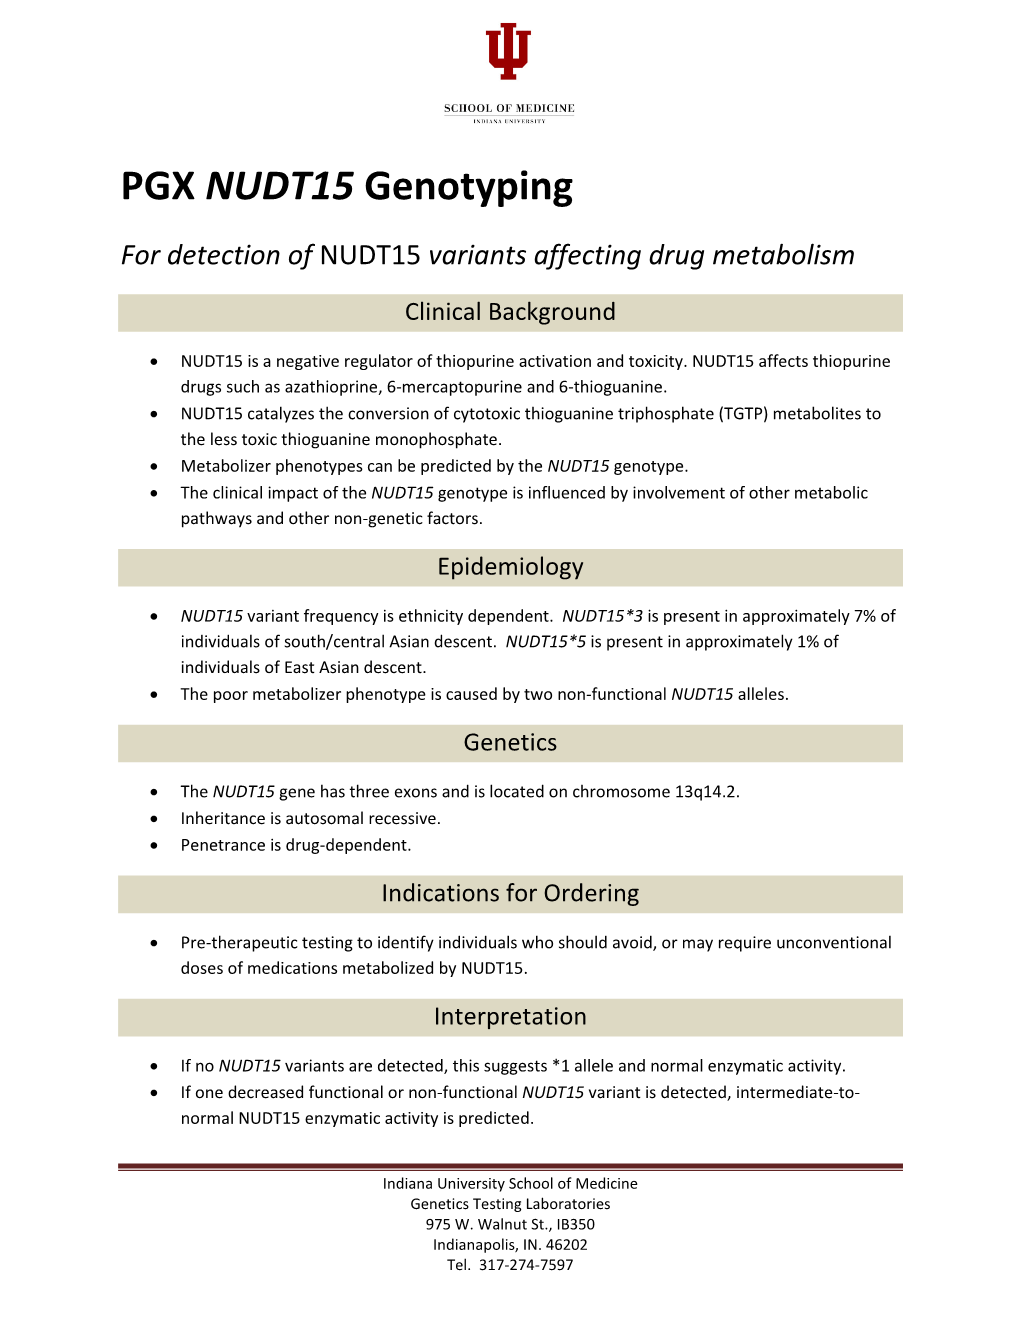 PGX NUDT15 Genotyping for Detection of NUDT15 Variants Affecting Drug Metabolism